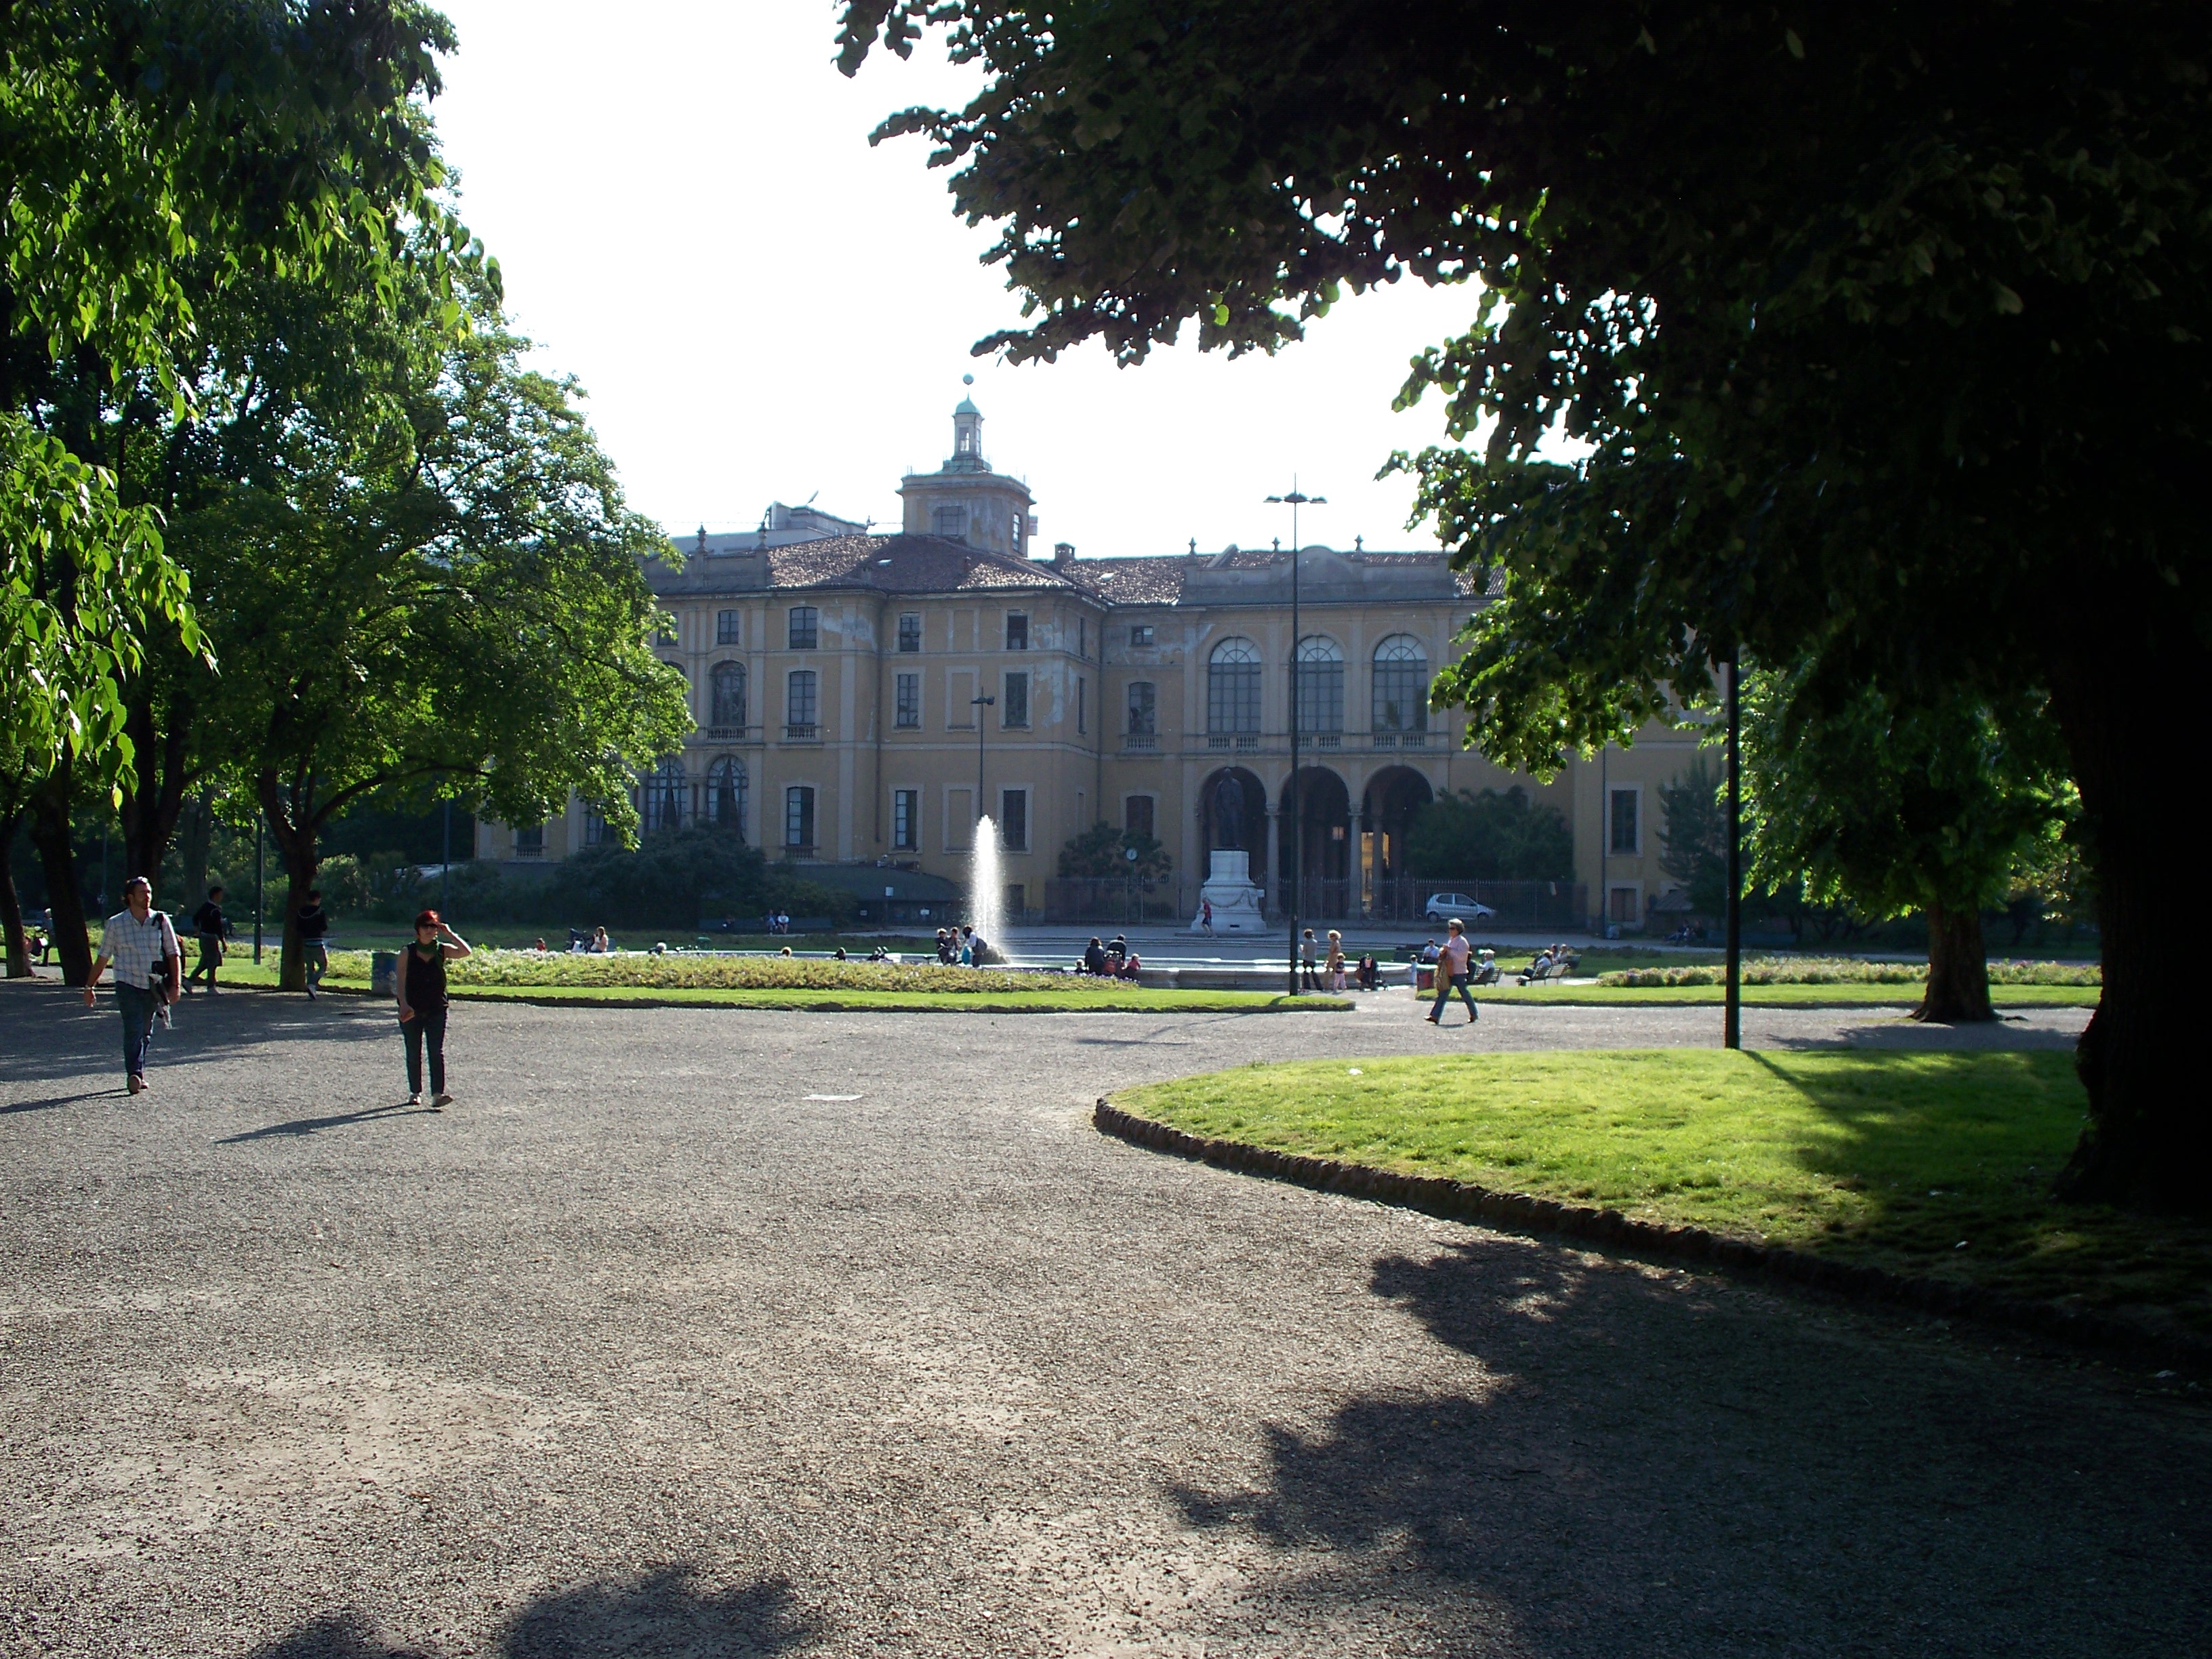 Palazzo Dugnani